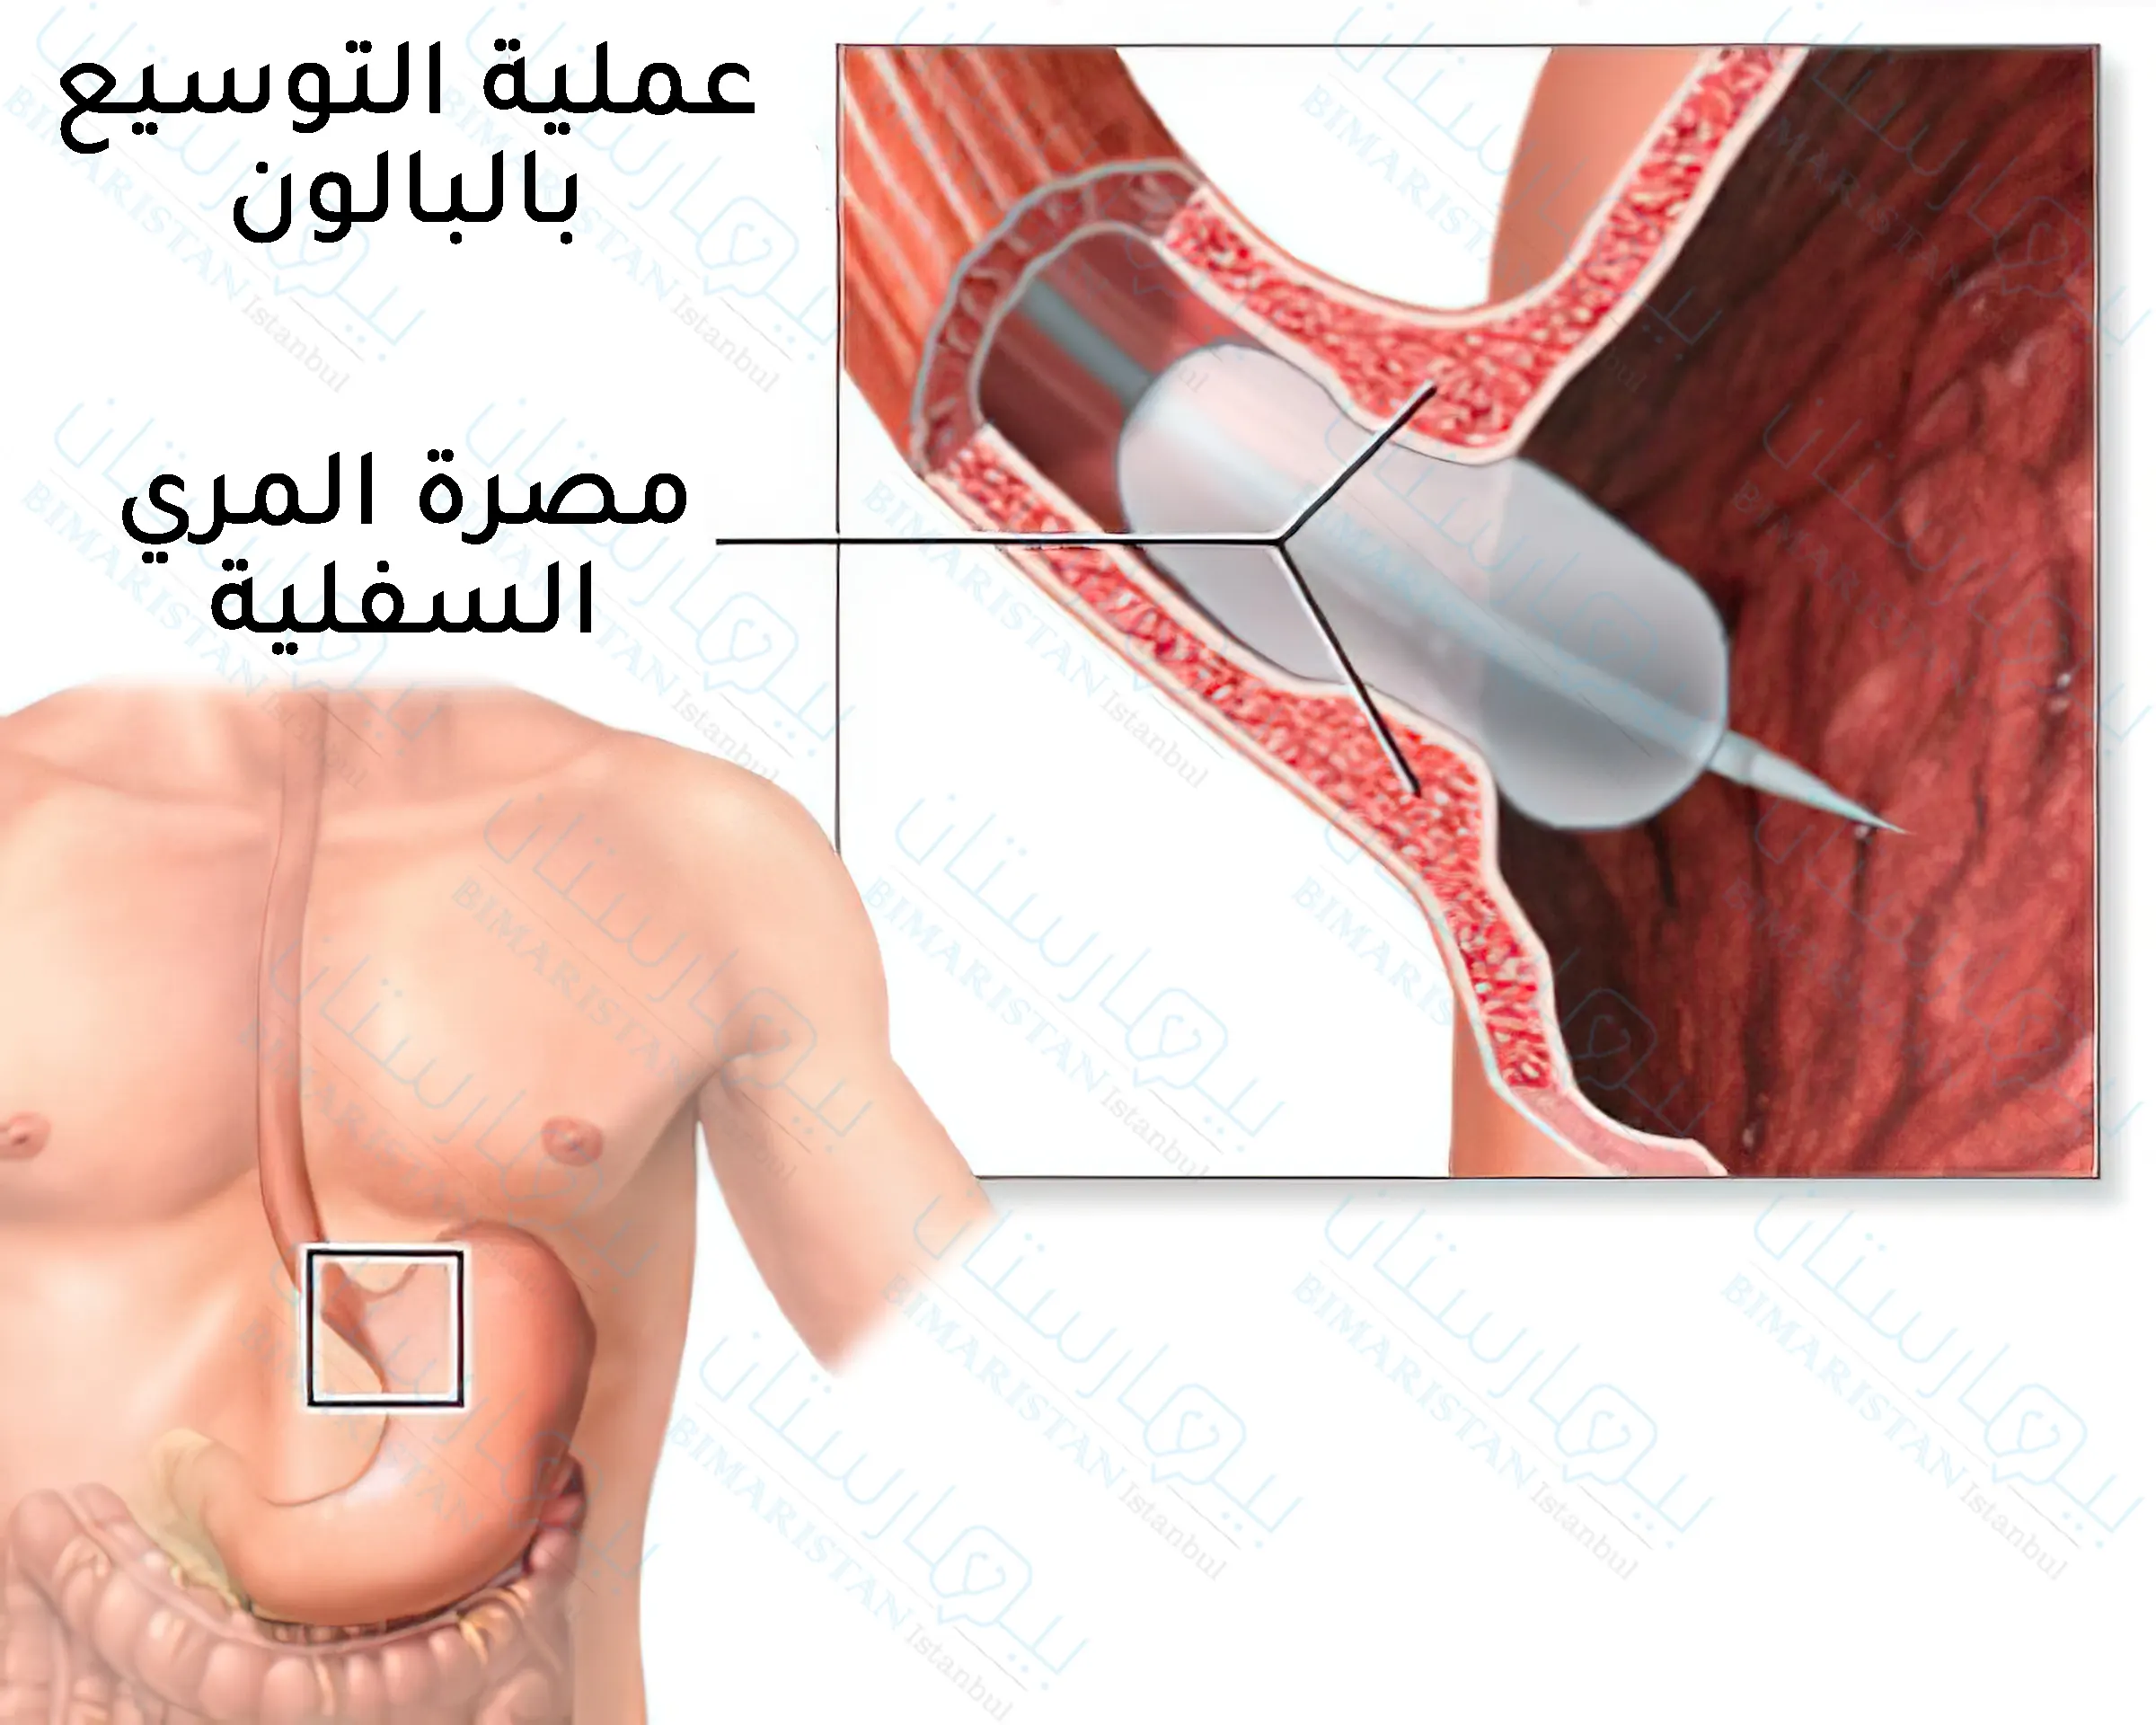 Türkiye'de akalazya tedavisinde kullanılan özofagus sfinkter dilatasyon ameliyatı